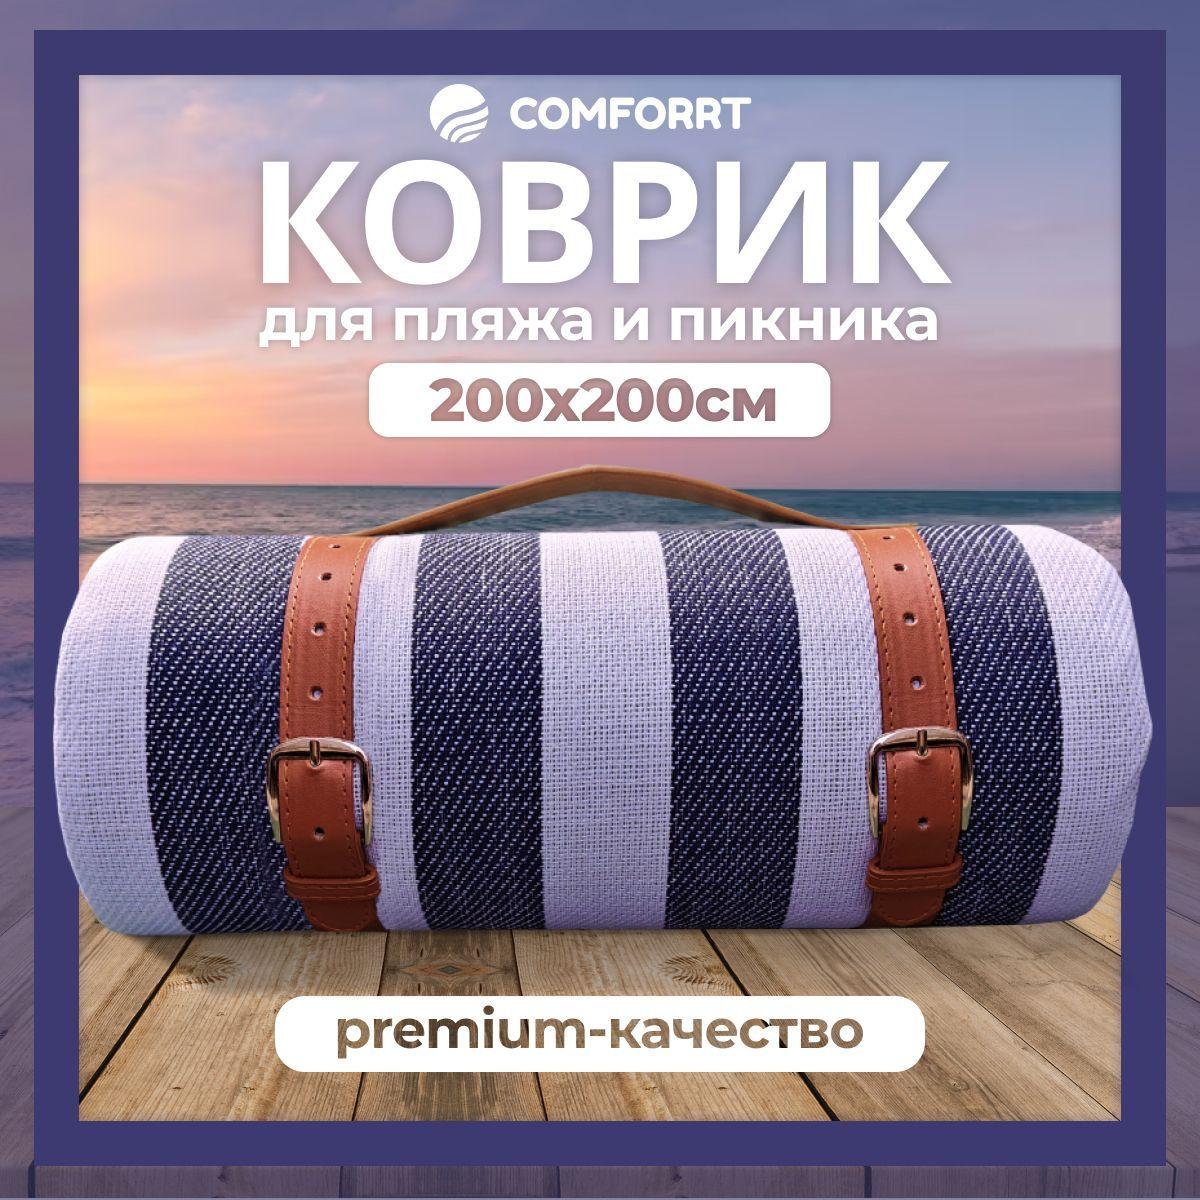 Comforrt | Пляжный коврик для гальки складной, сумка лежак для пляжа и моря, циновка для пикника, подстилка для похода, кемпинга и отдыха на природе, коврик туристический складной, 2Х2 м